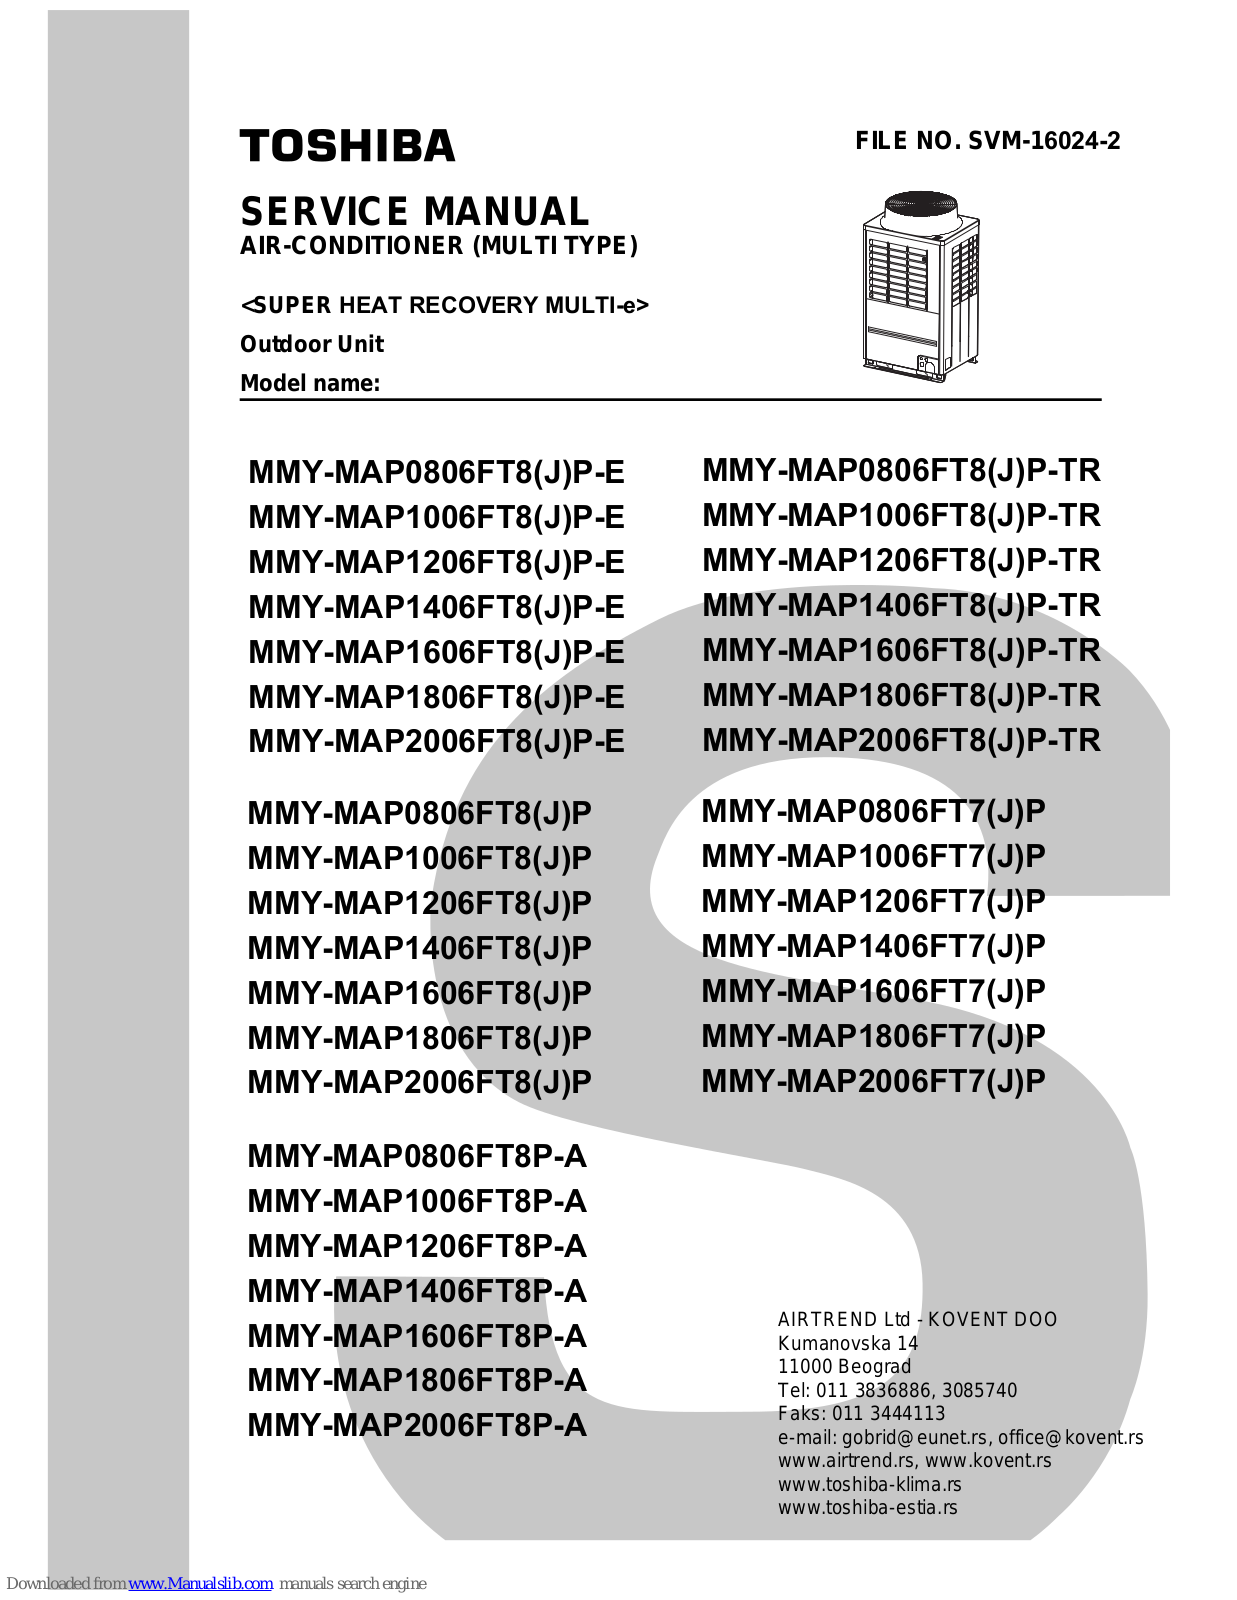 Toshiba MMY-MAP0806FT8P-A,MMY-MAP1006FT8P-A,MMY-MAP1206FT8P-A,MMY-MAP1406FT8P-A,MMY-MAP1606FT8P-A,MMY-MAP1806FT8P-A,MMY-MAP2006FT8P-A,MMY-MAP0806FT8JP-E,MMY-MAP1006FT8JP-E,MMY-MAP1206FT8JP-E,MMY-MAP1406FT8JP-E,MMY-MAP1606FT8JP-E,MMY-MAP1806FT8JP-E,MMY-MAP2006FT8JP-E,MMY-MAP0806FT8JP-TR,MMY-MAP1006FT8JP-TR,MMY-MAP1206FT8JP-TR,MMY-MAP1406FT8JP-TR,MMY-MAP1606FT8JP-TR,MMY-MAP1806FT8JP-TR,MMY-MAP2006FT8JP-TR,MMY-MAP0806FT8JP,MMY-MAP1006FT8JP,MMY-MAP1206FT8JP,MMY-MAP1406FT8JP,MMY-MAP1606FT8JP,MMY-MAP1806FT8JP,MMY-MAP2006FT8JP,MMY-MAP0806FT7JP,MMY-MAP1006FT7JP,MMY-MAP1206FT7JP,MMY-MAP1406FT7JP,MMY-MAP1606FT7JP,MMY-MAP1806FT7JP,MMY-MAP2006FT7JP,MMY-MAP0806FT8P-A,MMY-MAP1006FT8P-A,MMY-MAP1206FT8P-A,MMY-MAP1406FT8P-A,MMY-MAP1606FT8P-A,MMY-MAP1806FT8P-A,MMY-MAP2006FT8P-A, MMY-MAP0806FT8P-E,MMY-MAP1006FT8P-E,MMY-MAP1206FT8P-E,MMY-MAP1406FT8P-E,MMY-MAP1606FT8P-E,MMY-MAP1806FT8P-E,MMY-MAP2006FT8P-E,MMY-MAP0806FT8P-TR,MMY-MAP1006FT8P-TR,MMY-MAP1206FT8P-TR,MMY-MAP1406FT8P-TR,MMY-MAP1606FT8P-TR,MMY-MAP1806FT8P-TR,MMY-MAP2006FT8P-TR,MMY-MAP0806FT8P,MMY-MAP1006FT8P,MMY-MAP1206FT8P,MMY-MAP1406FT8P,MMY-MAP1606FT8P,MMY-MAP1806FT8P,MMY-MAP2006FT8P,MMY-MAP0806FT7P,MMY-MAP1006FT7P,MMY-MAP1206FT7P,MMY-MAP1406FT7P,MMY-MAP1606FT7P,MMY-MAP1806FT7P,MMY-MAP2006FT7P Service Manual